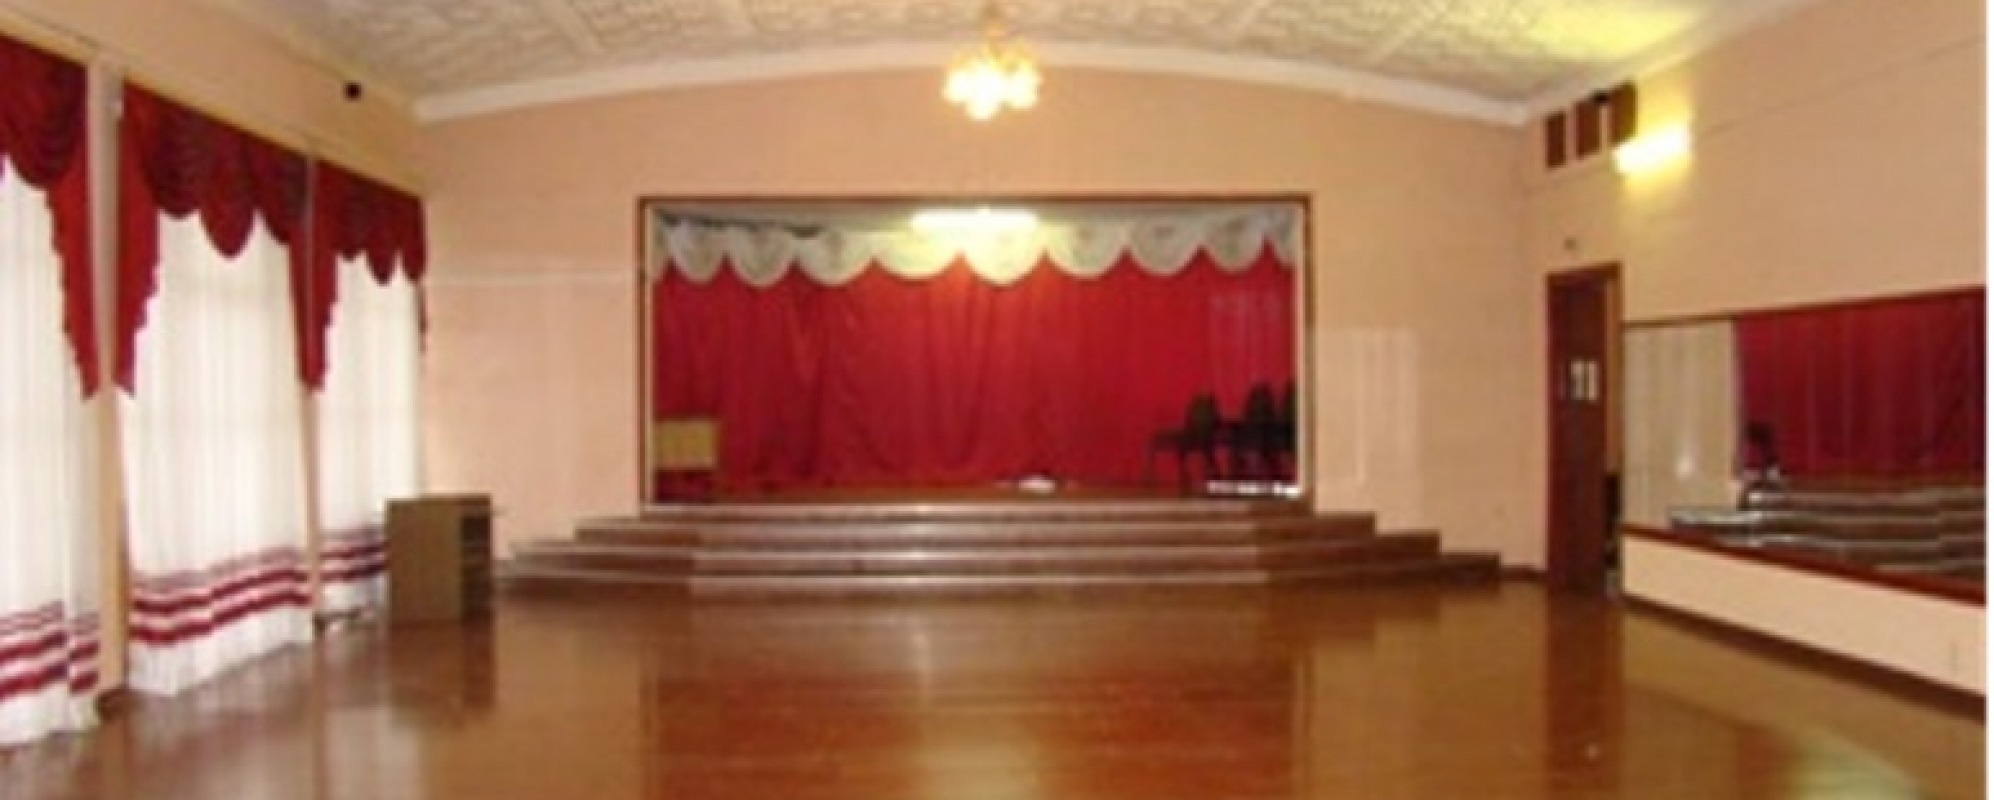 Фотографии концертного зала Малый зал Городского Дворца культуры железнодорожников